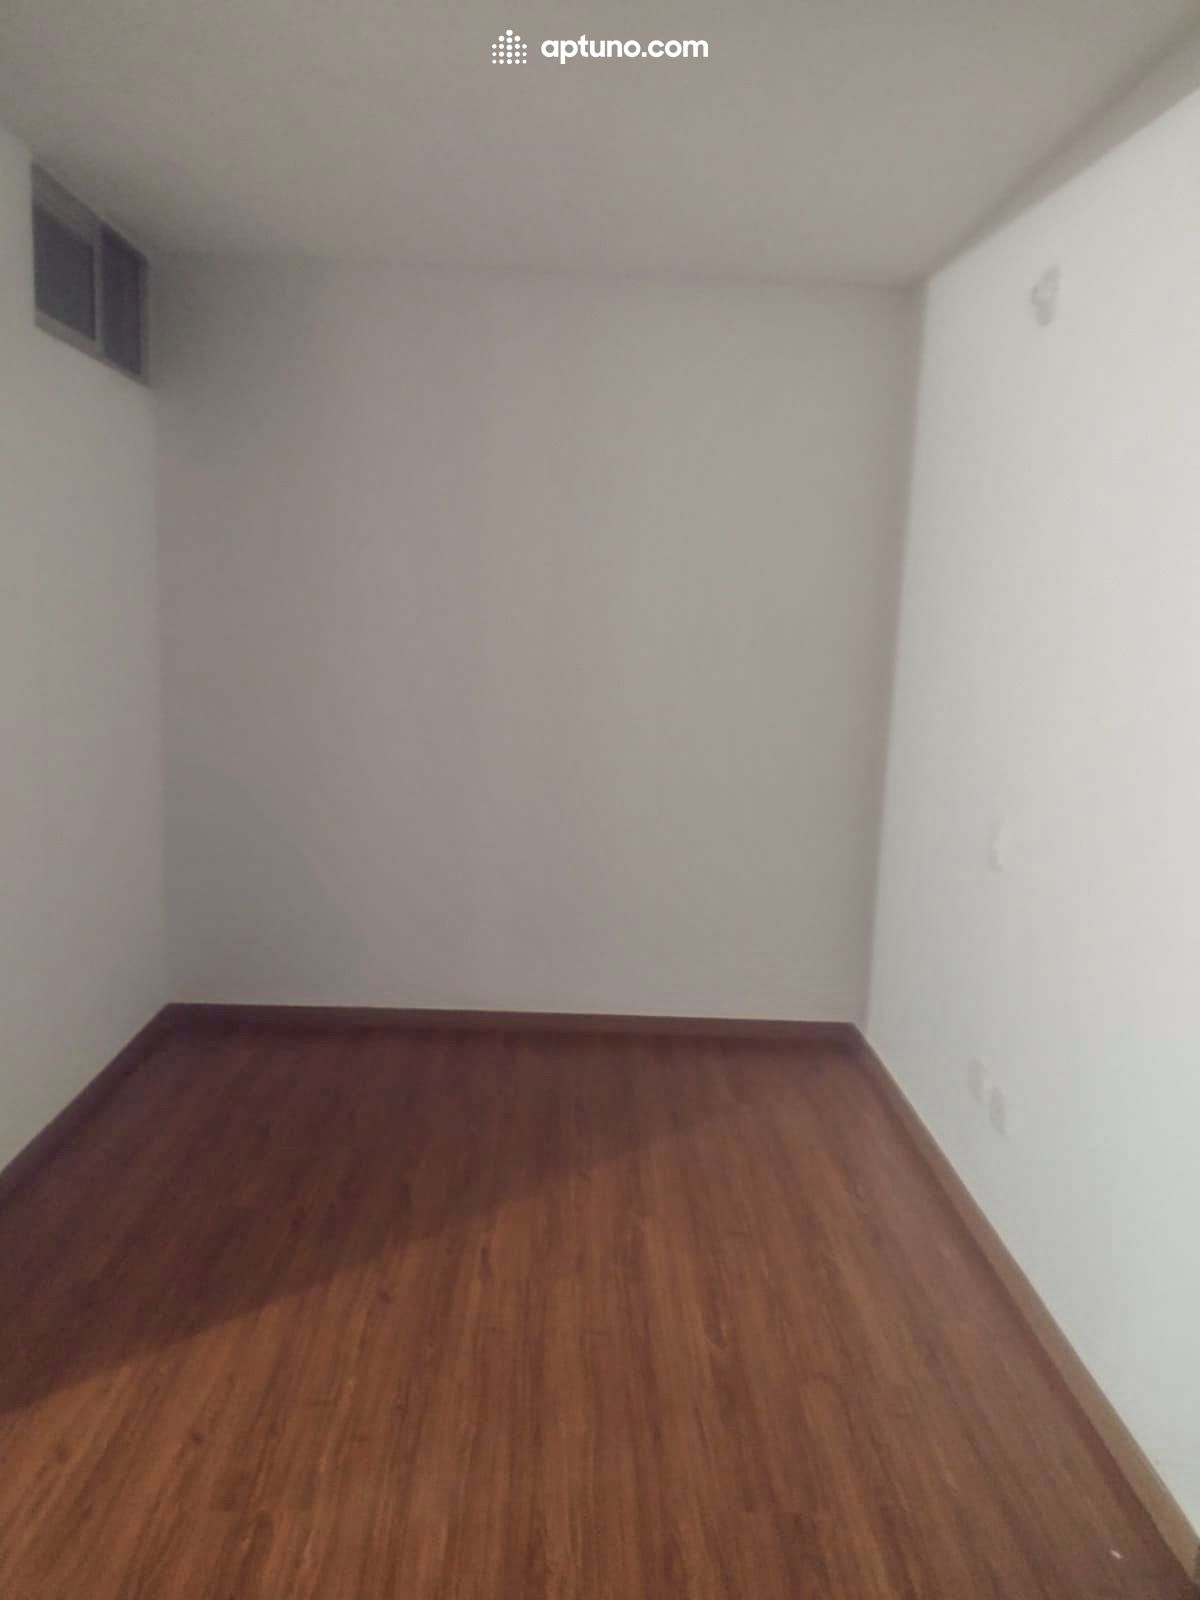 Apartamento en arriendo Tocancipá 55 m² - $ 768.000,00